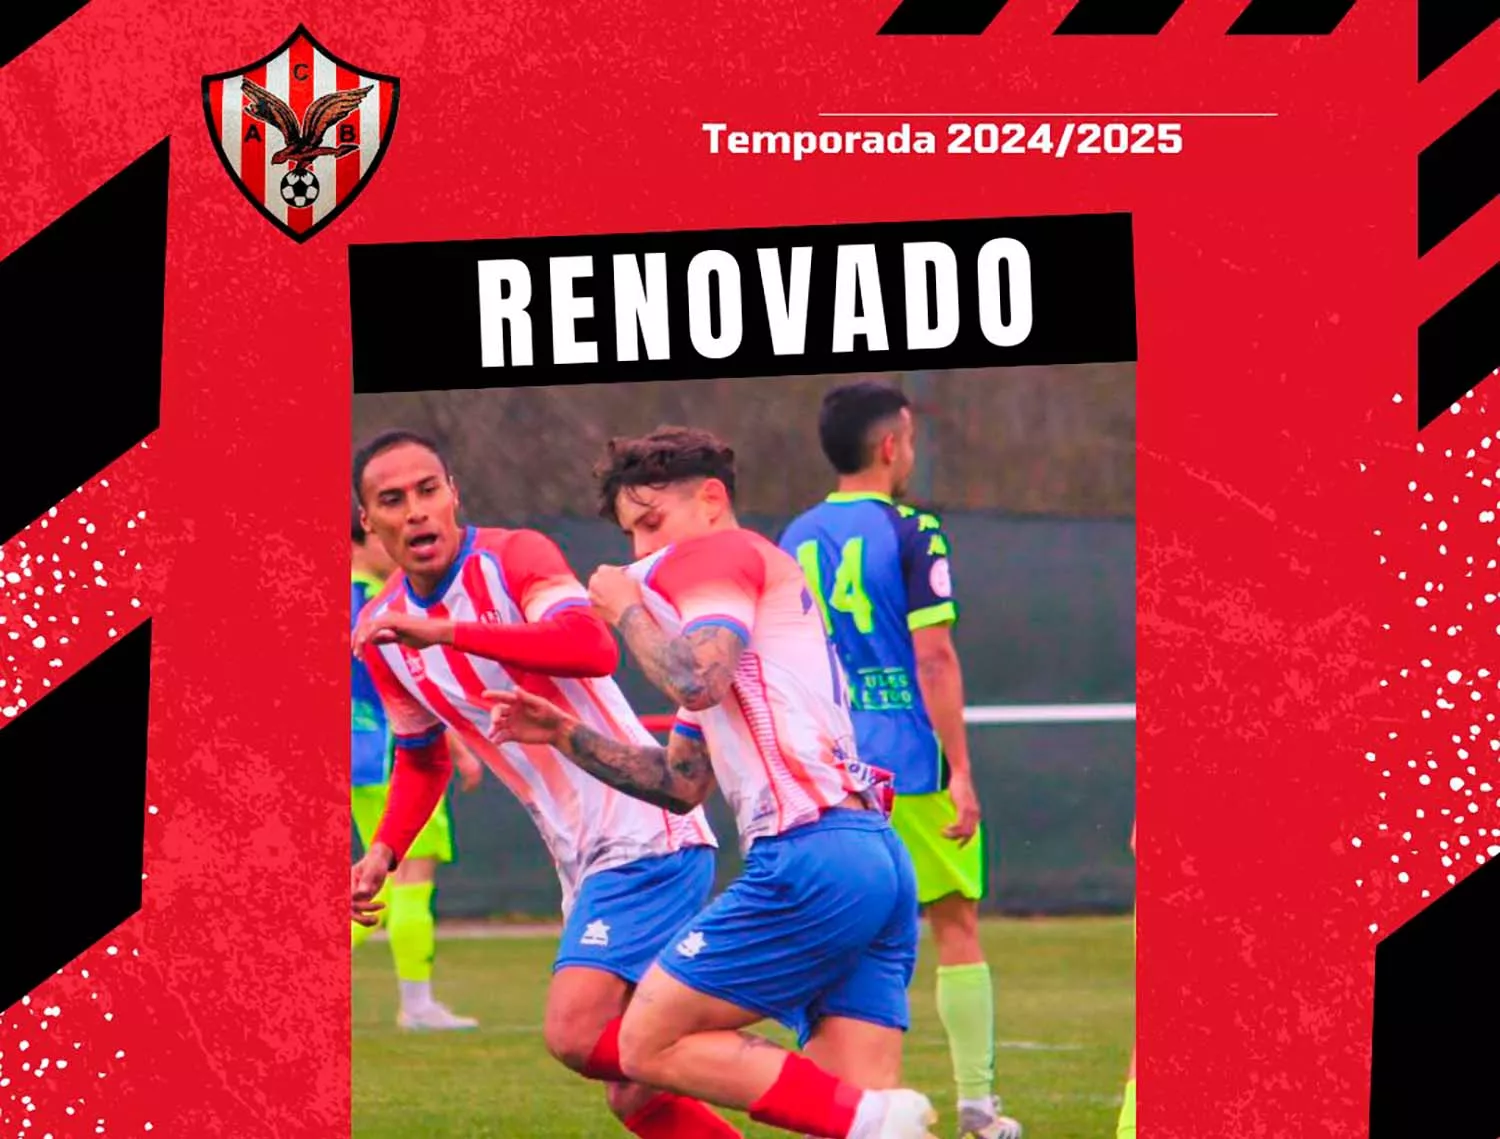 Ivan Tato renueva con el Atlético Bembibre  Imagen extraida de @AtcoBembibre